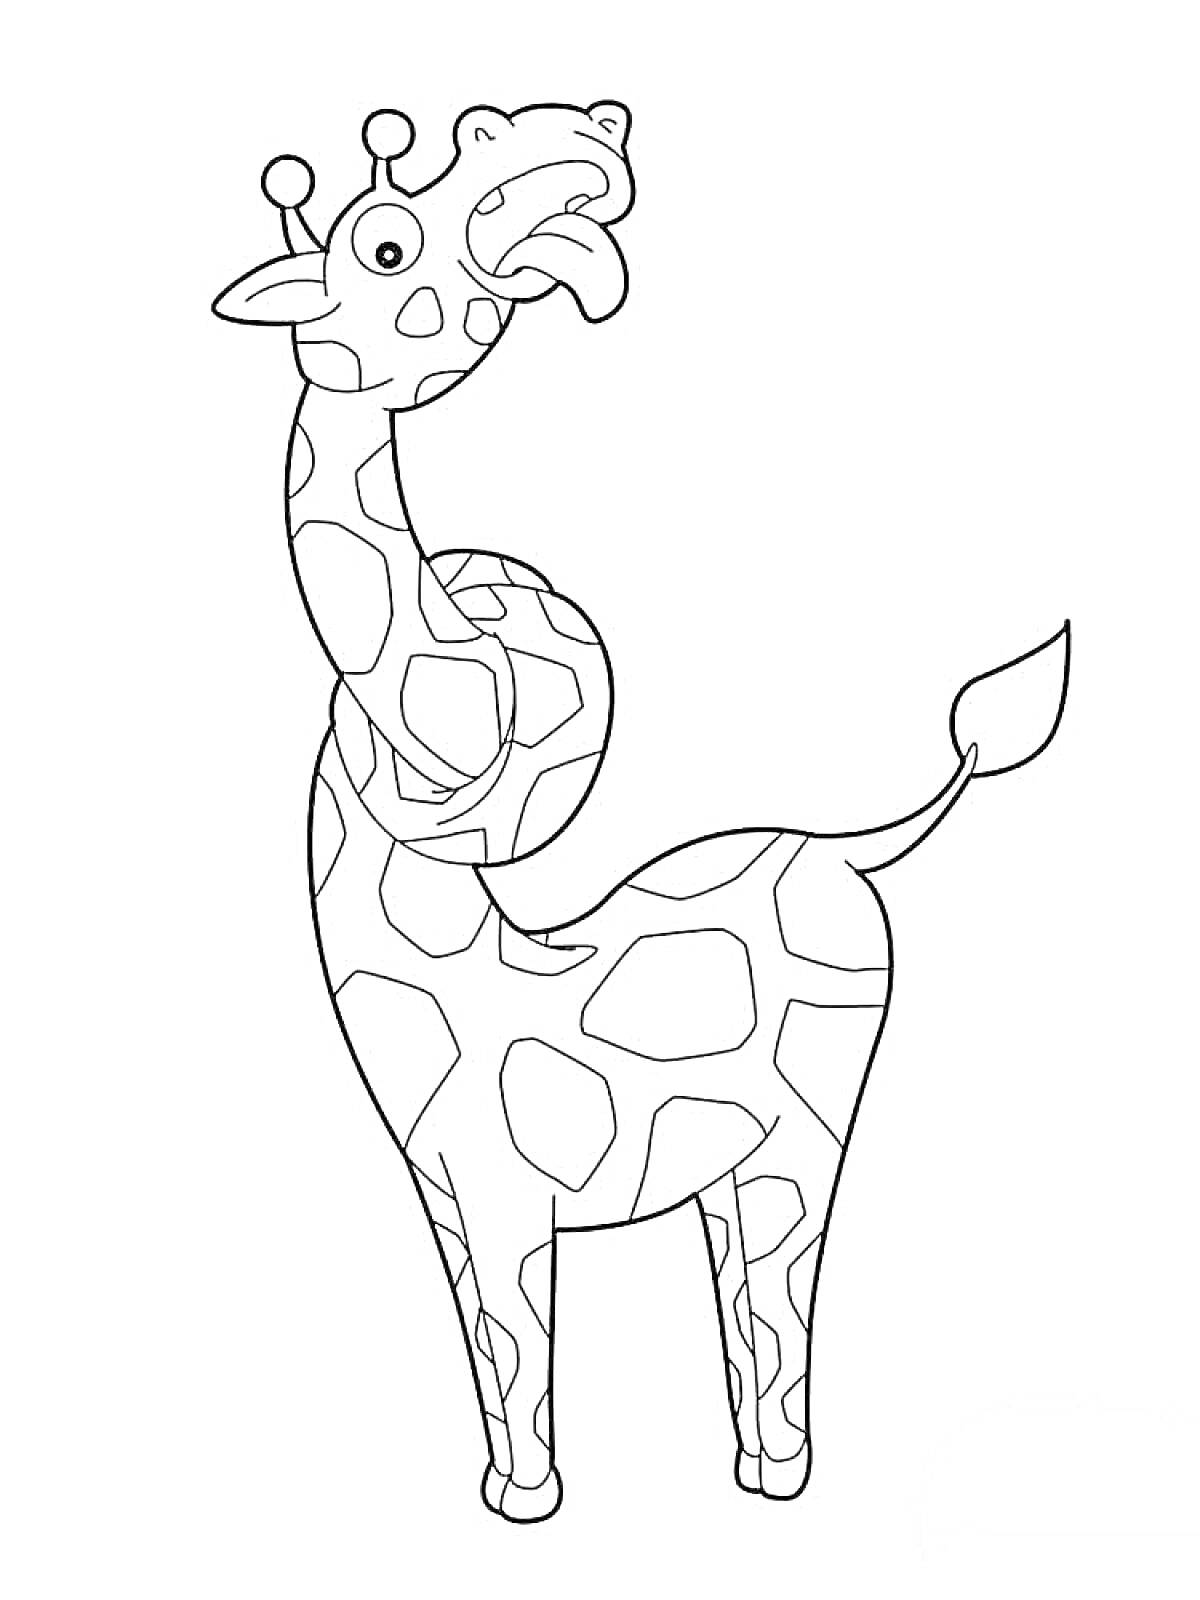 Раскраска Жираф с длинной шеей, стоящий на копытах, с пятнами на теле, ушами и хвостом